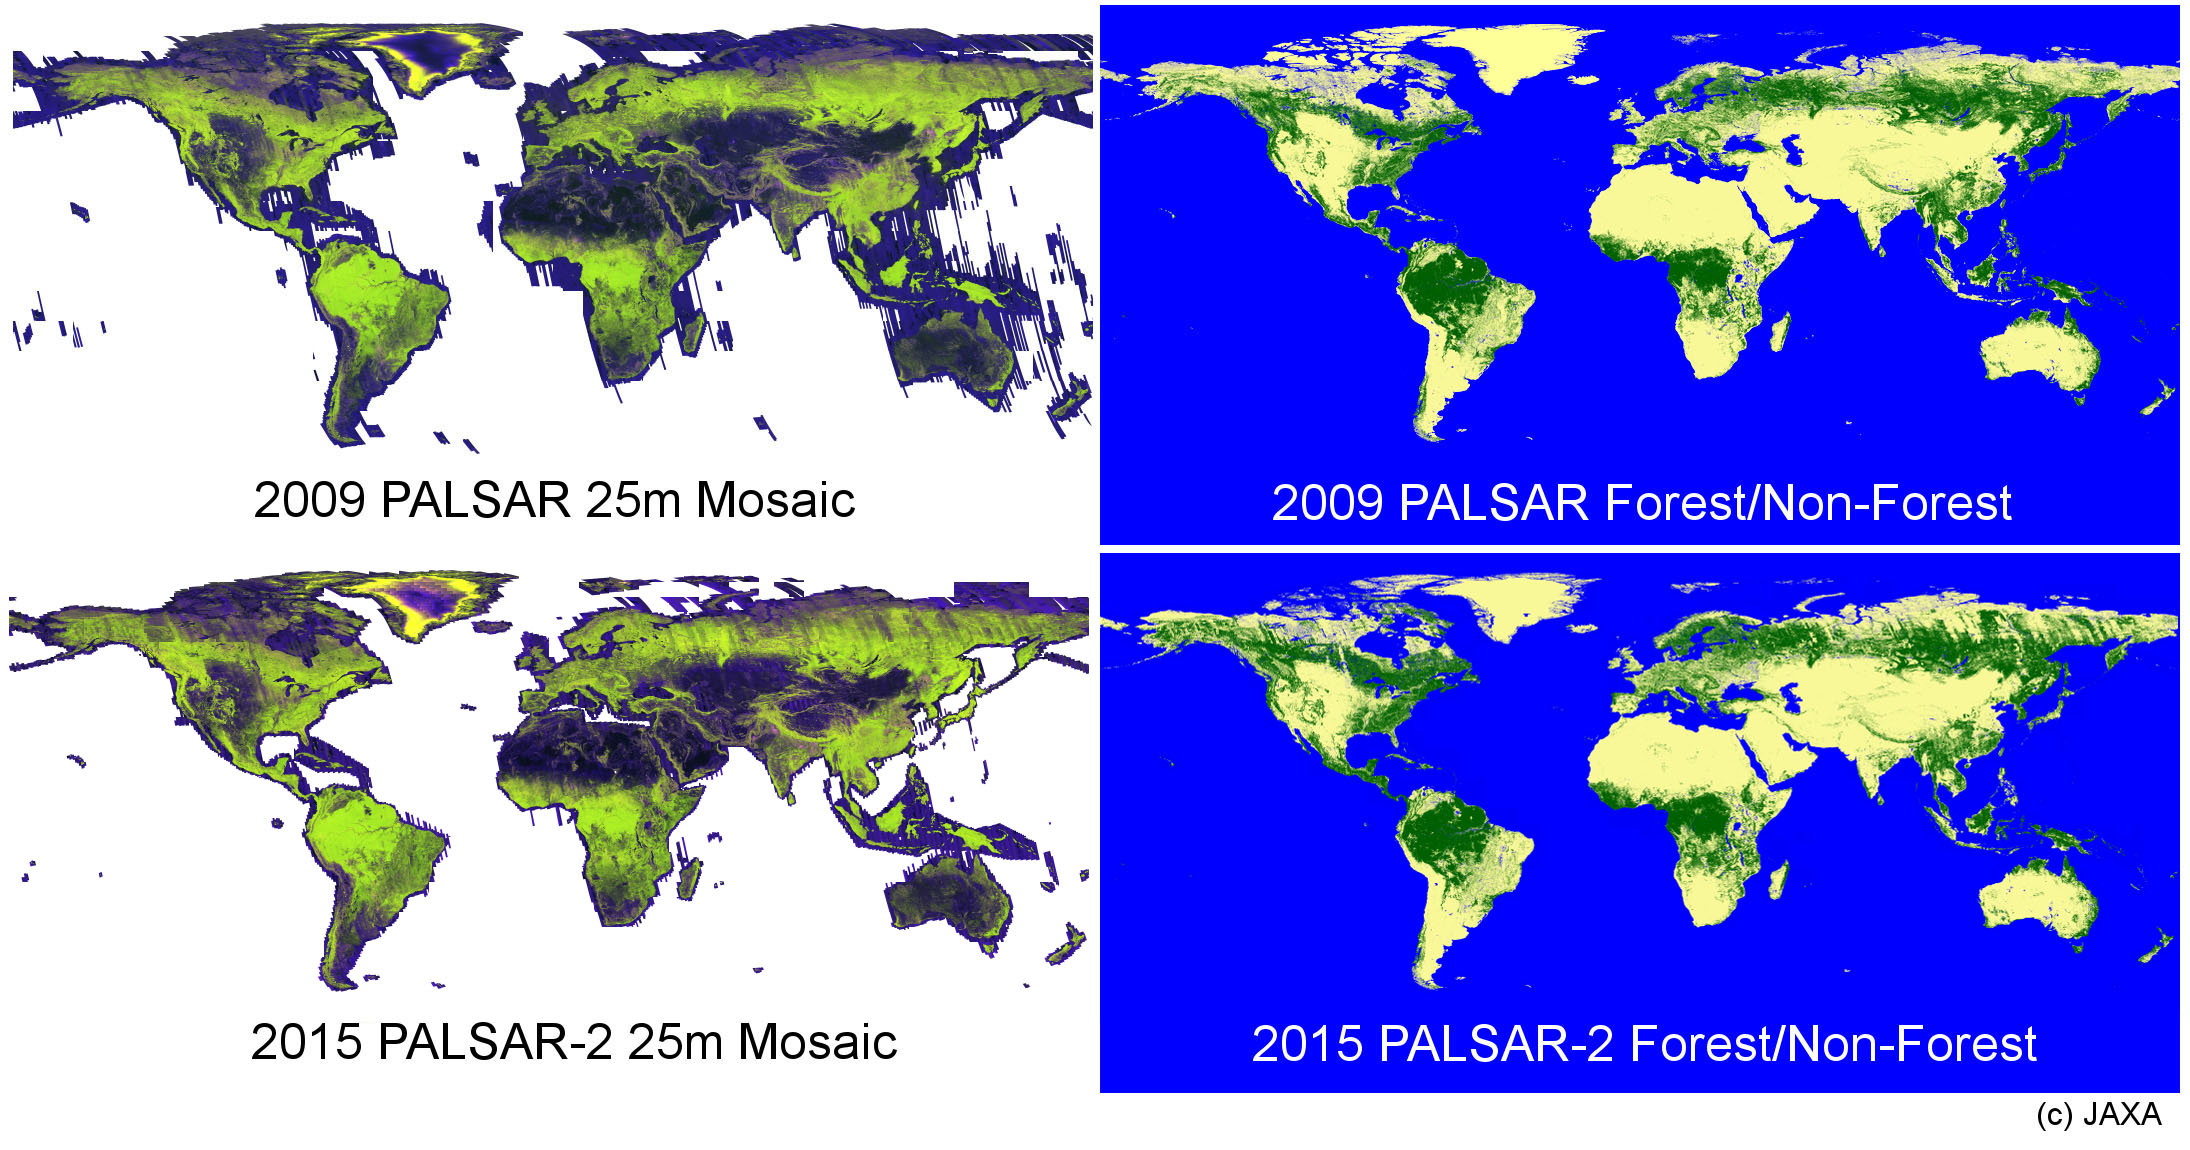 図1: (左上) 2009年/PALSARの全球モザイク画像、(右上) 2009年/PALSARの森林・非森林マップ、(左下) 2015年/PALSAR-2の全球モザイク画像、(右下) 2015年/PALSAR-2の森林・非森林マップ